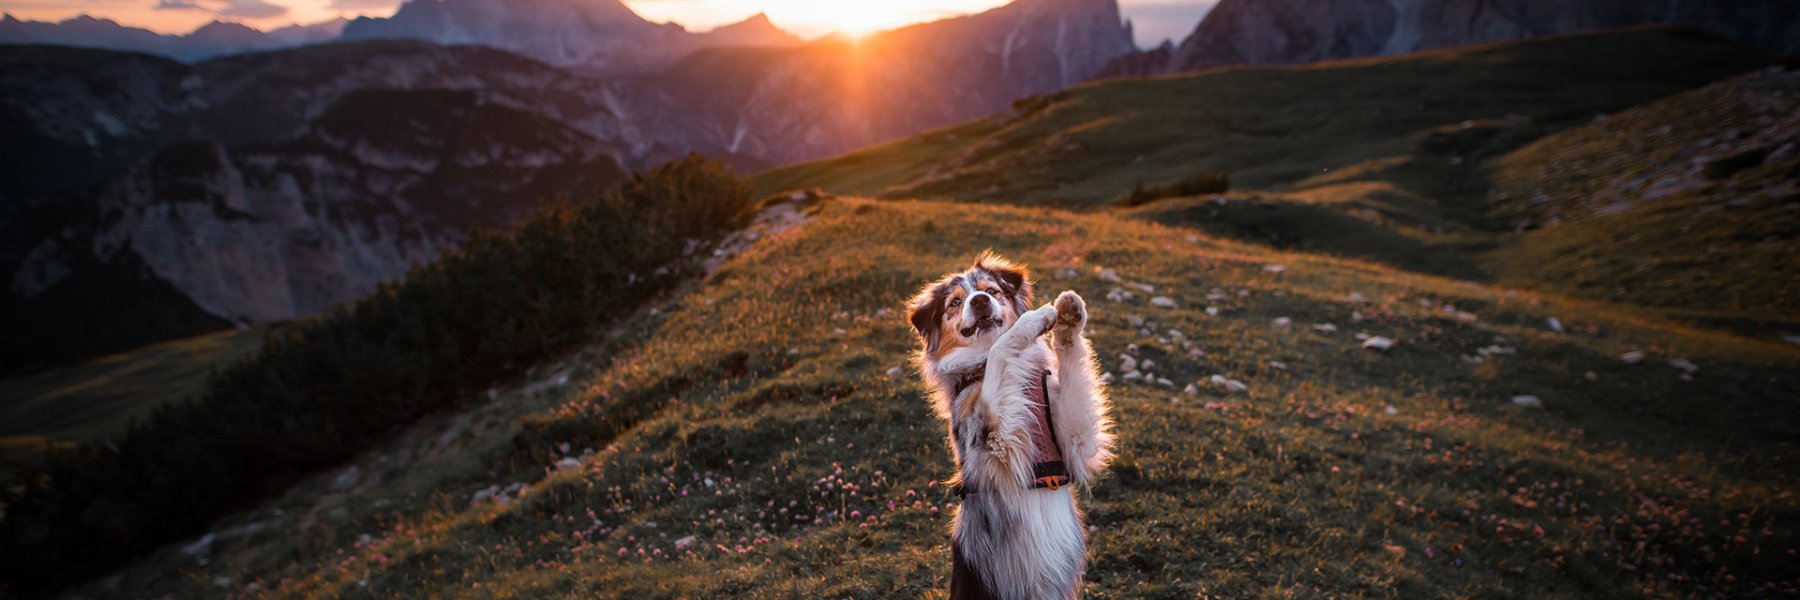 Ferienhausurlaub mit Hund in Österreich 